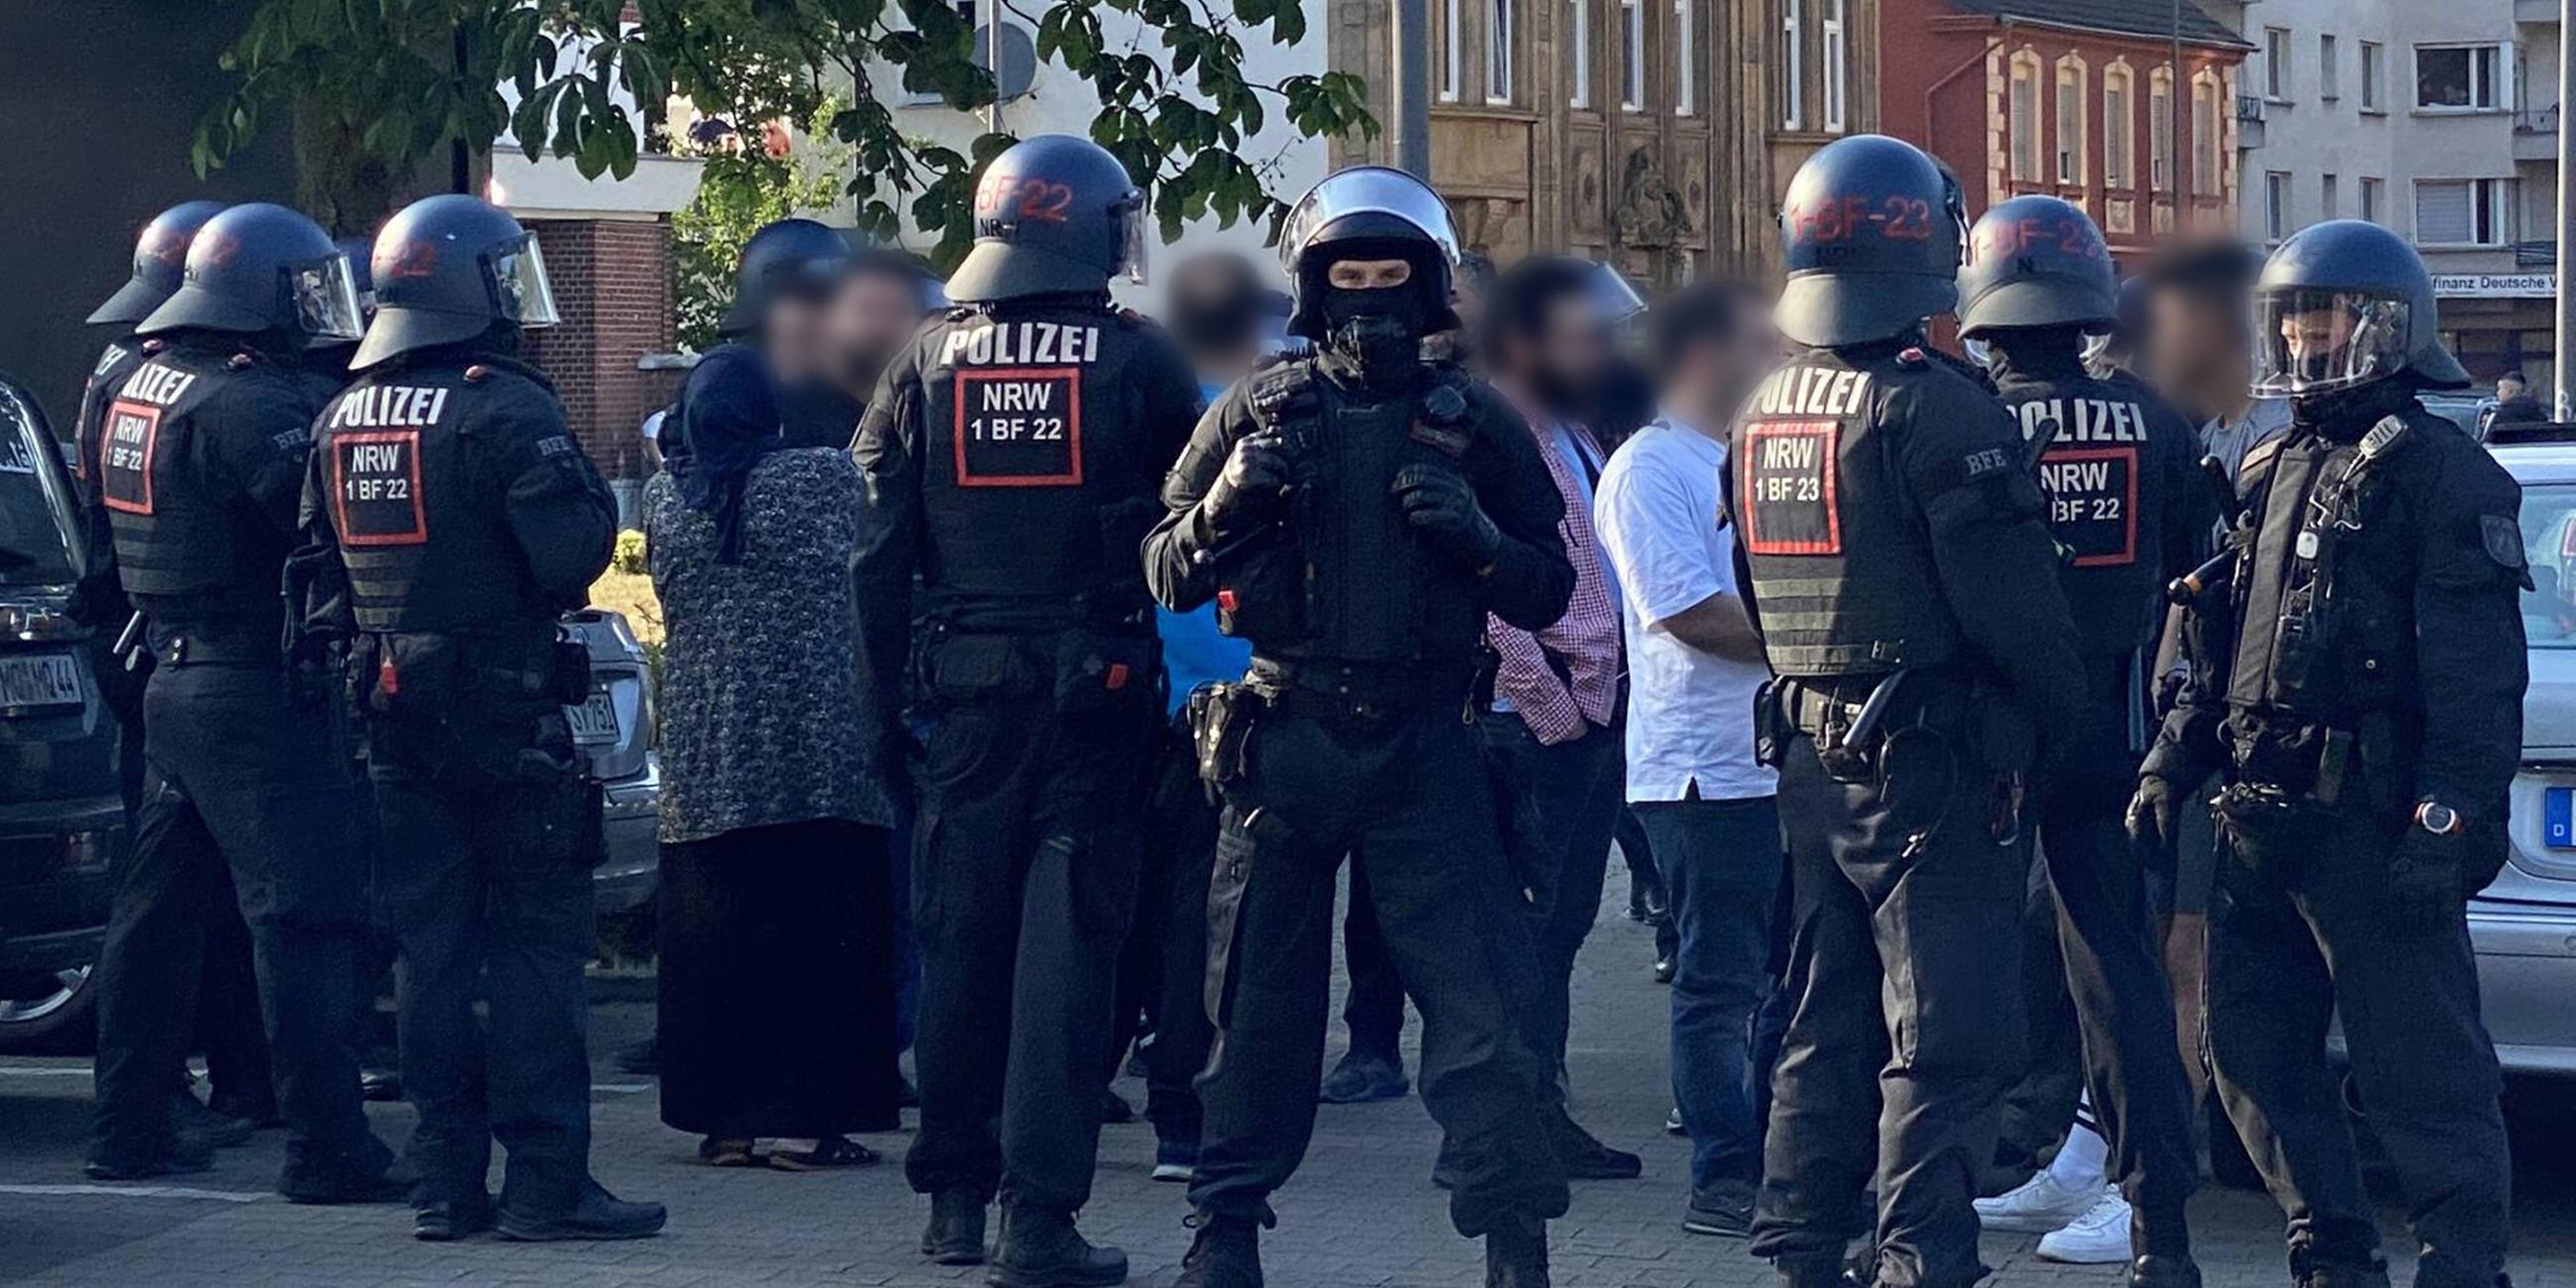 Polizisten schirmen Personen ab, die in Castrop-Rauxel bei einer Massenschlägeri dabei waren